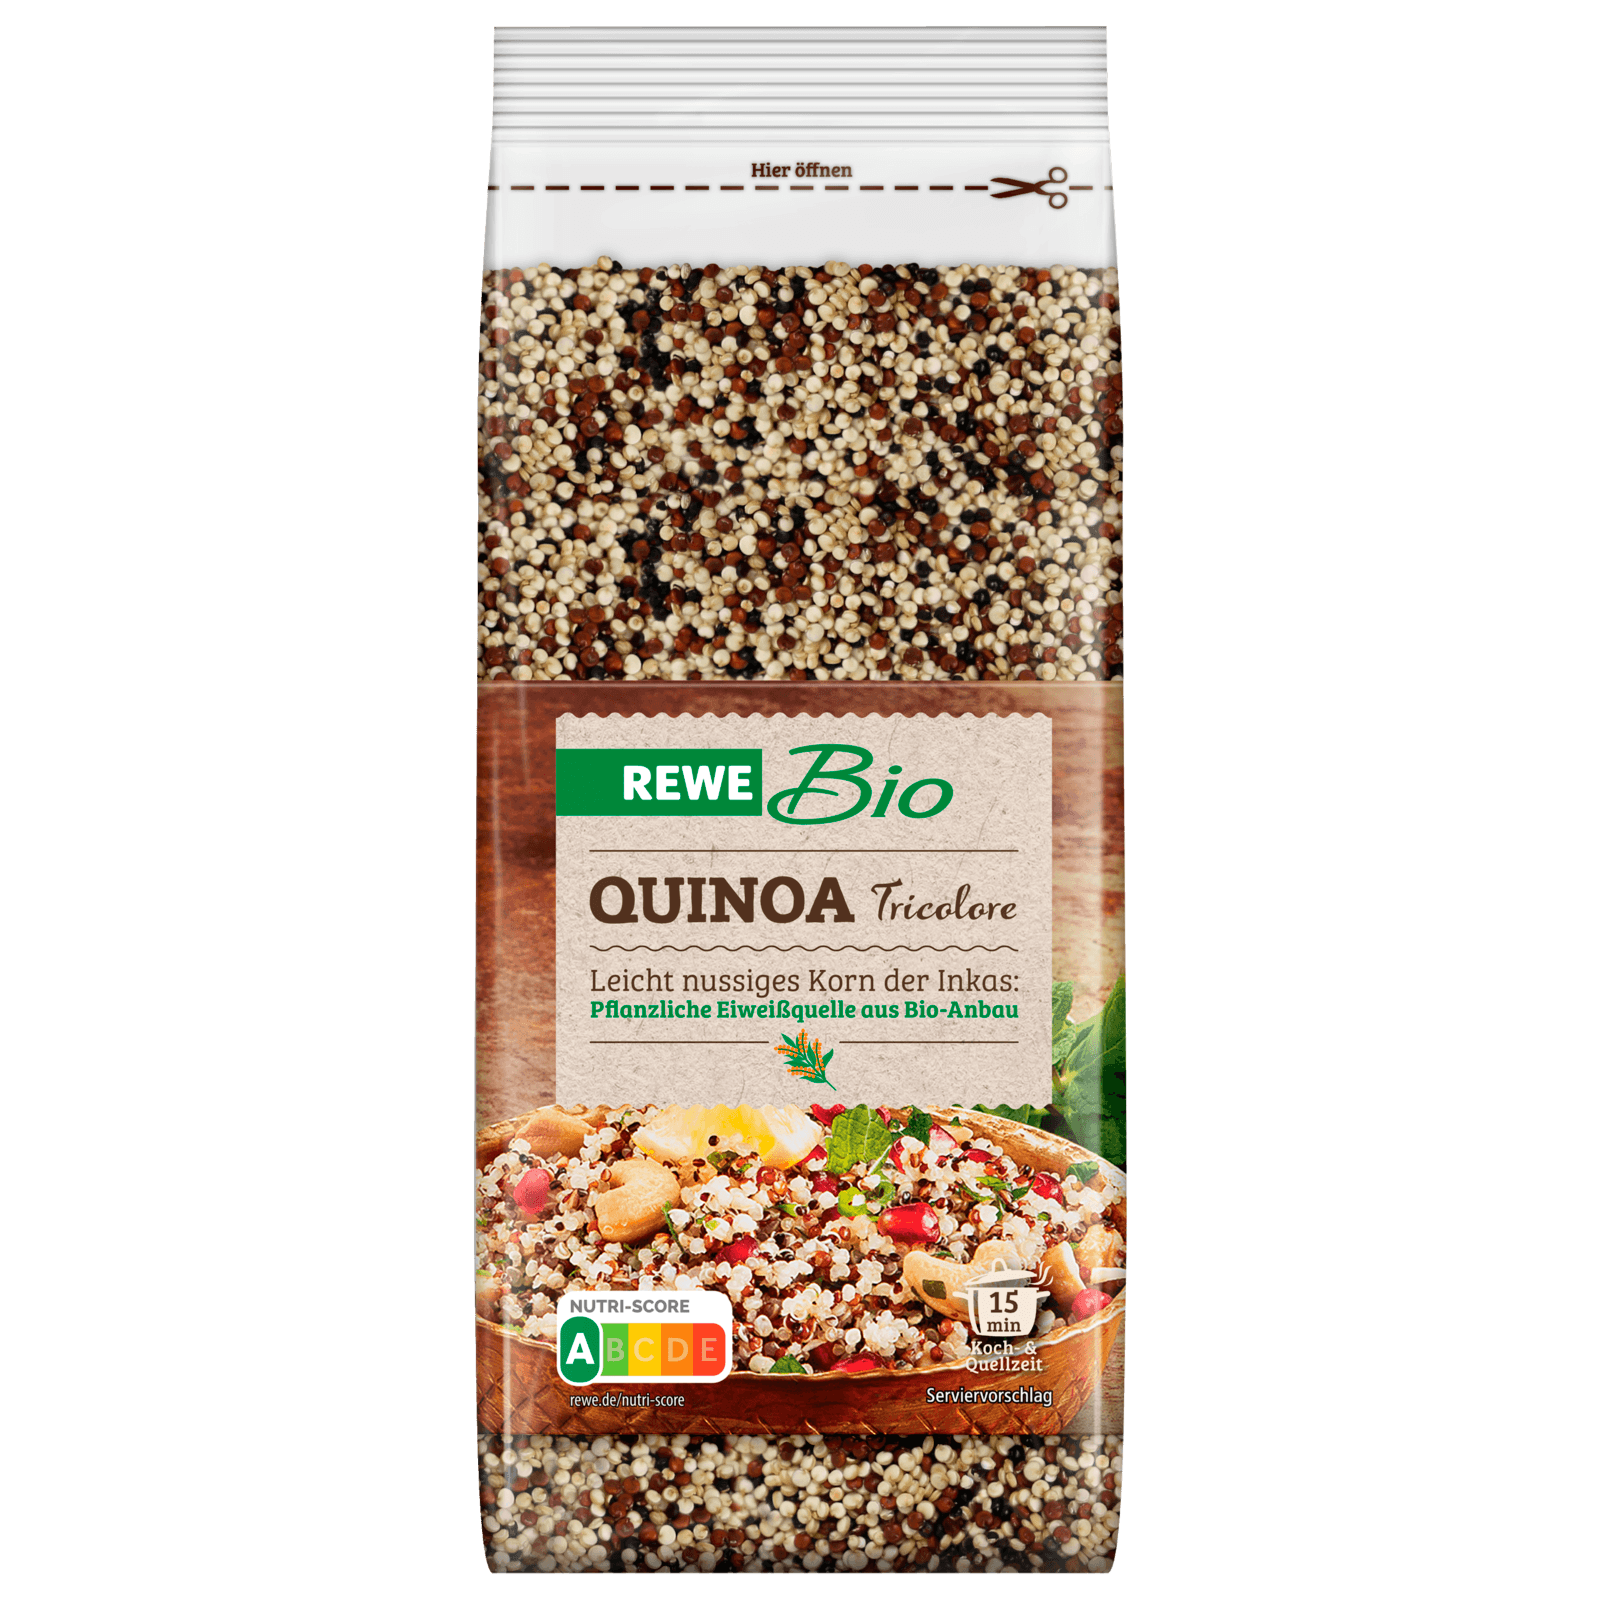 REWE Bio Quinoa Tricolore 400g